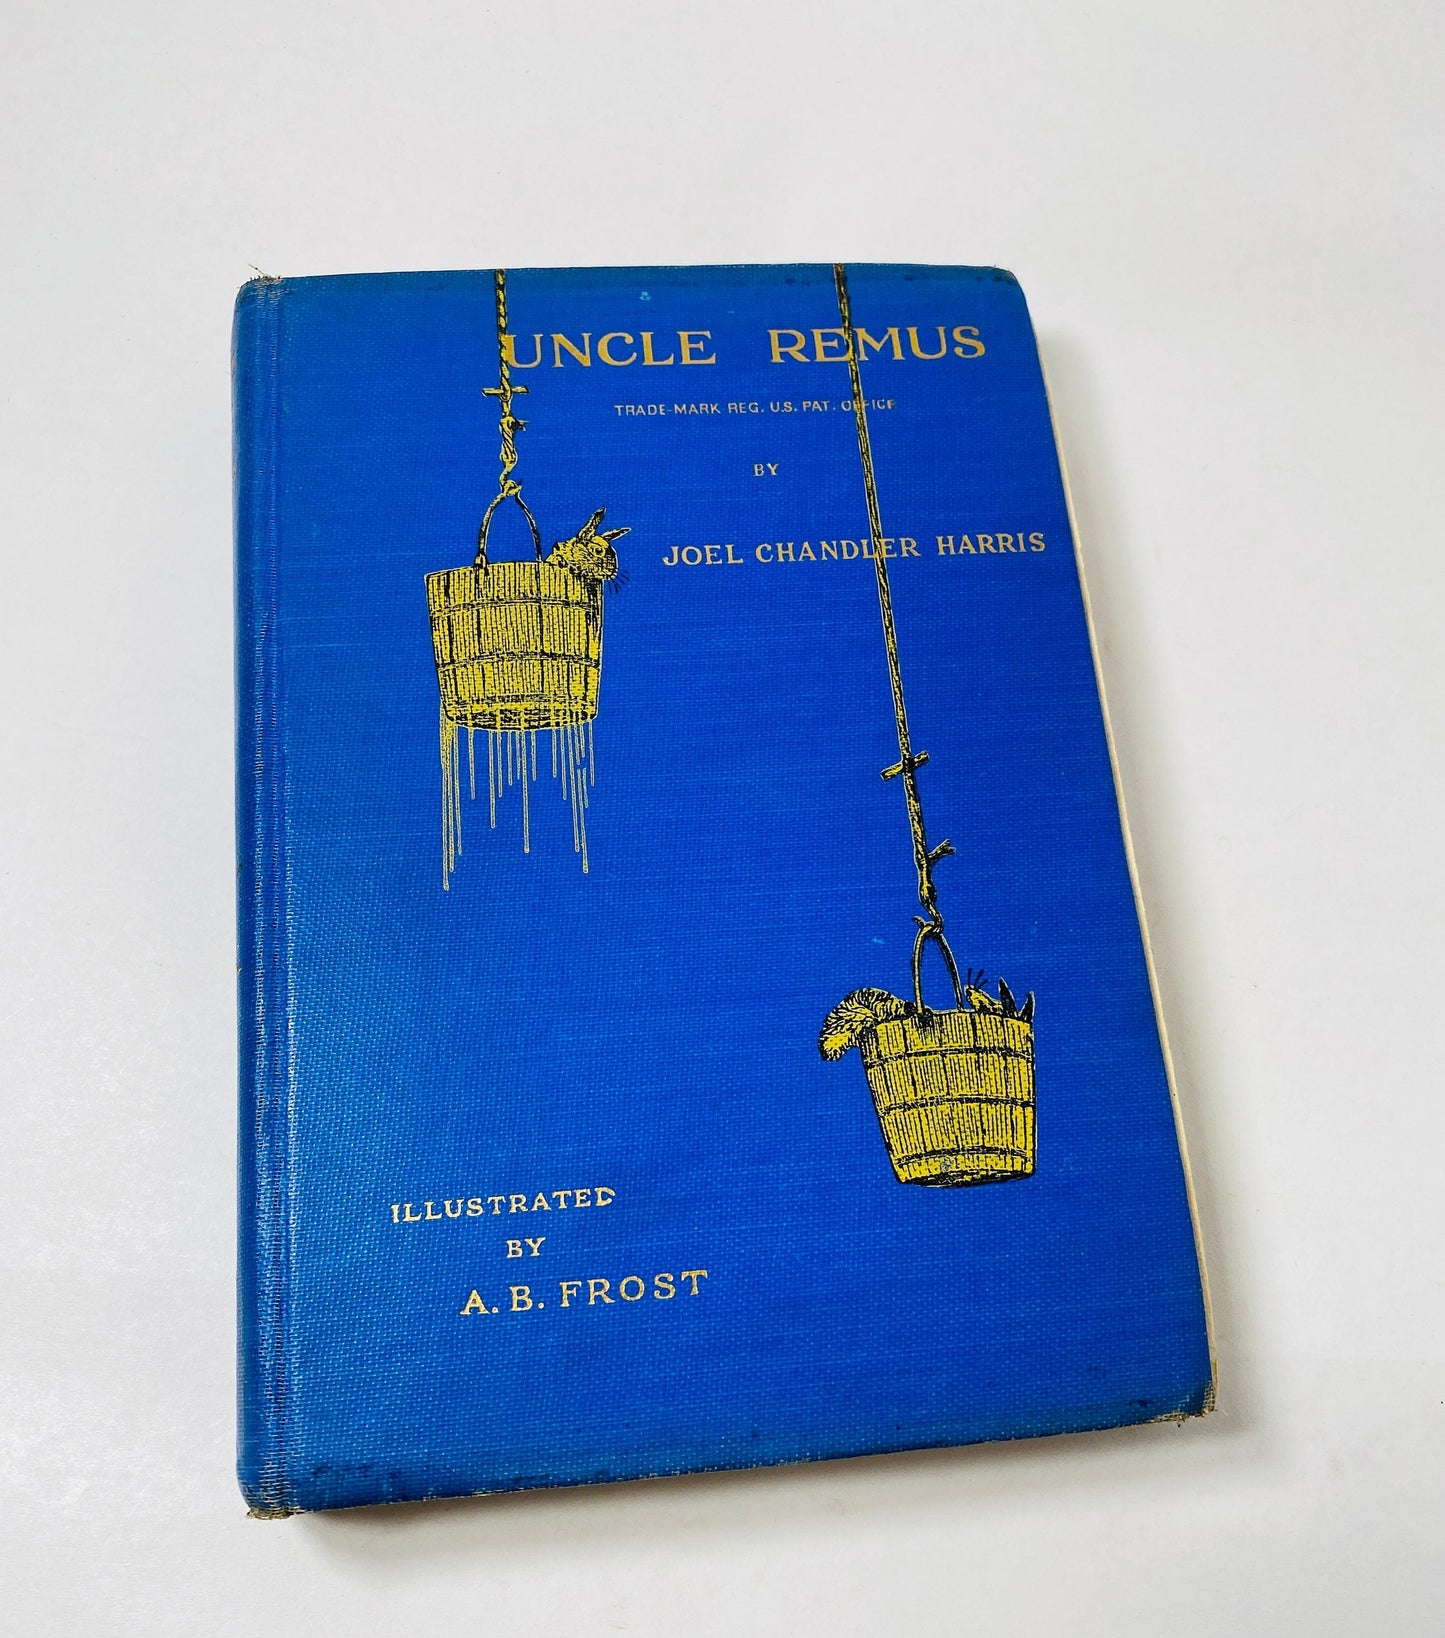 Uncle Remus Stories vintage book circa 1921 by Joel Chandler Harris Aesop's Fables Jean de La Fontaine. Blue bookshelf decor Poor Condition